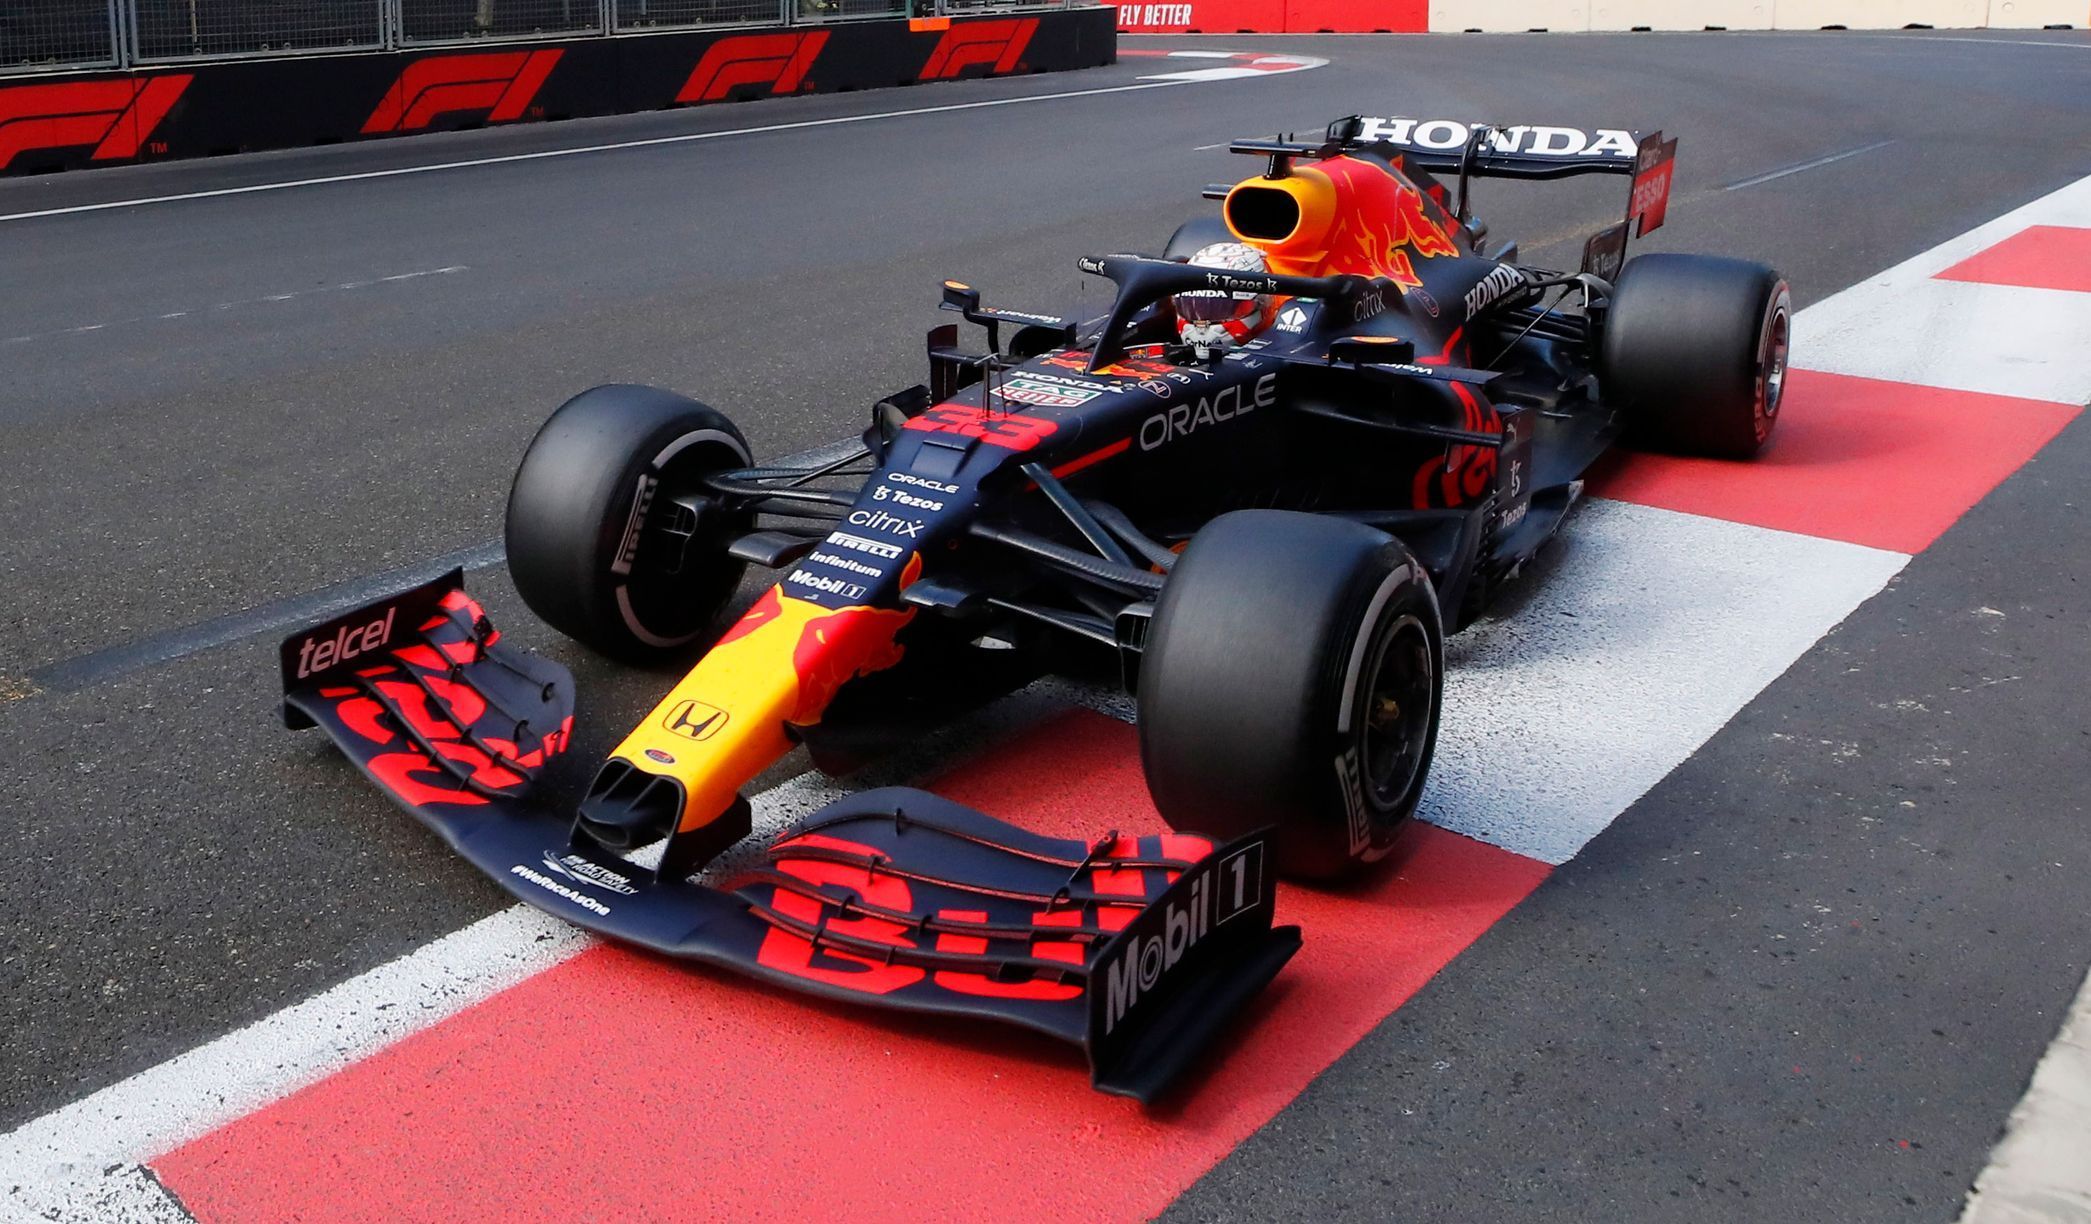 Max Verstappen v Red Bullu ve Velké ceně Ázerbájdžánu F1 2021